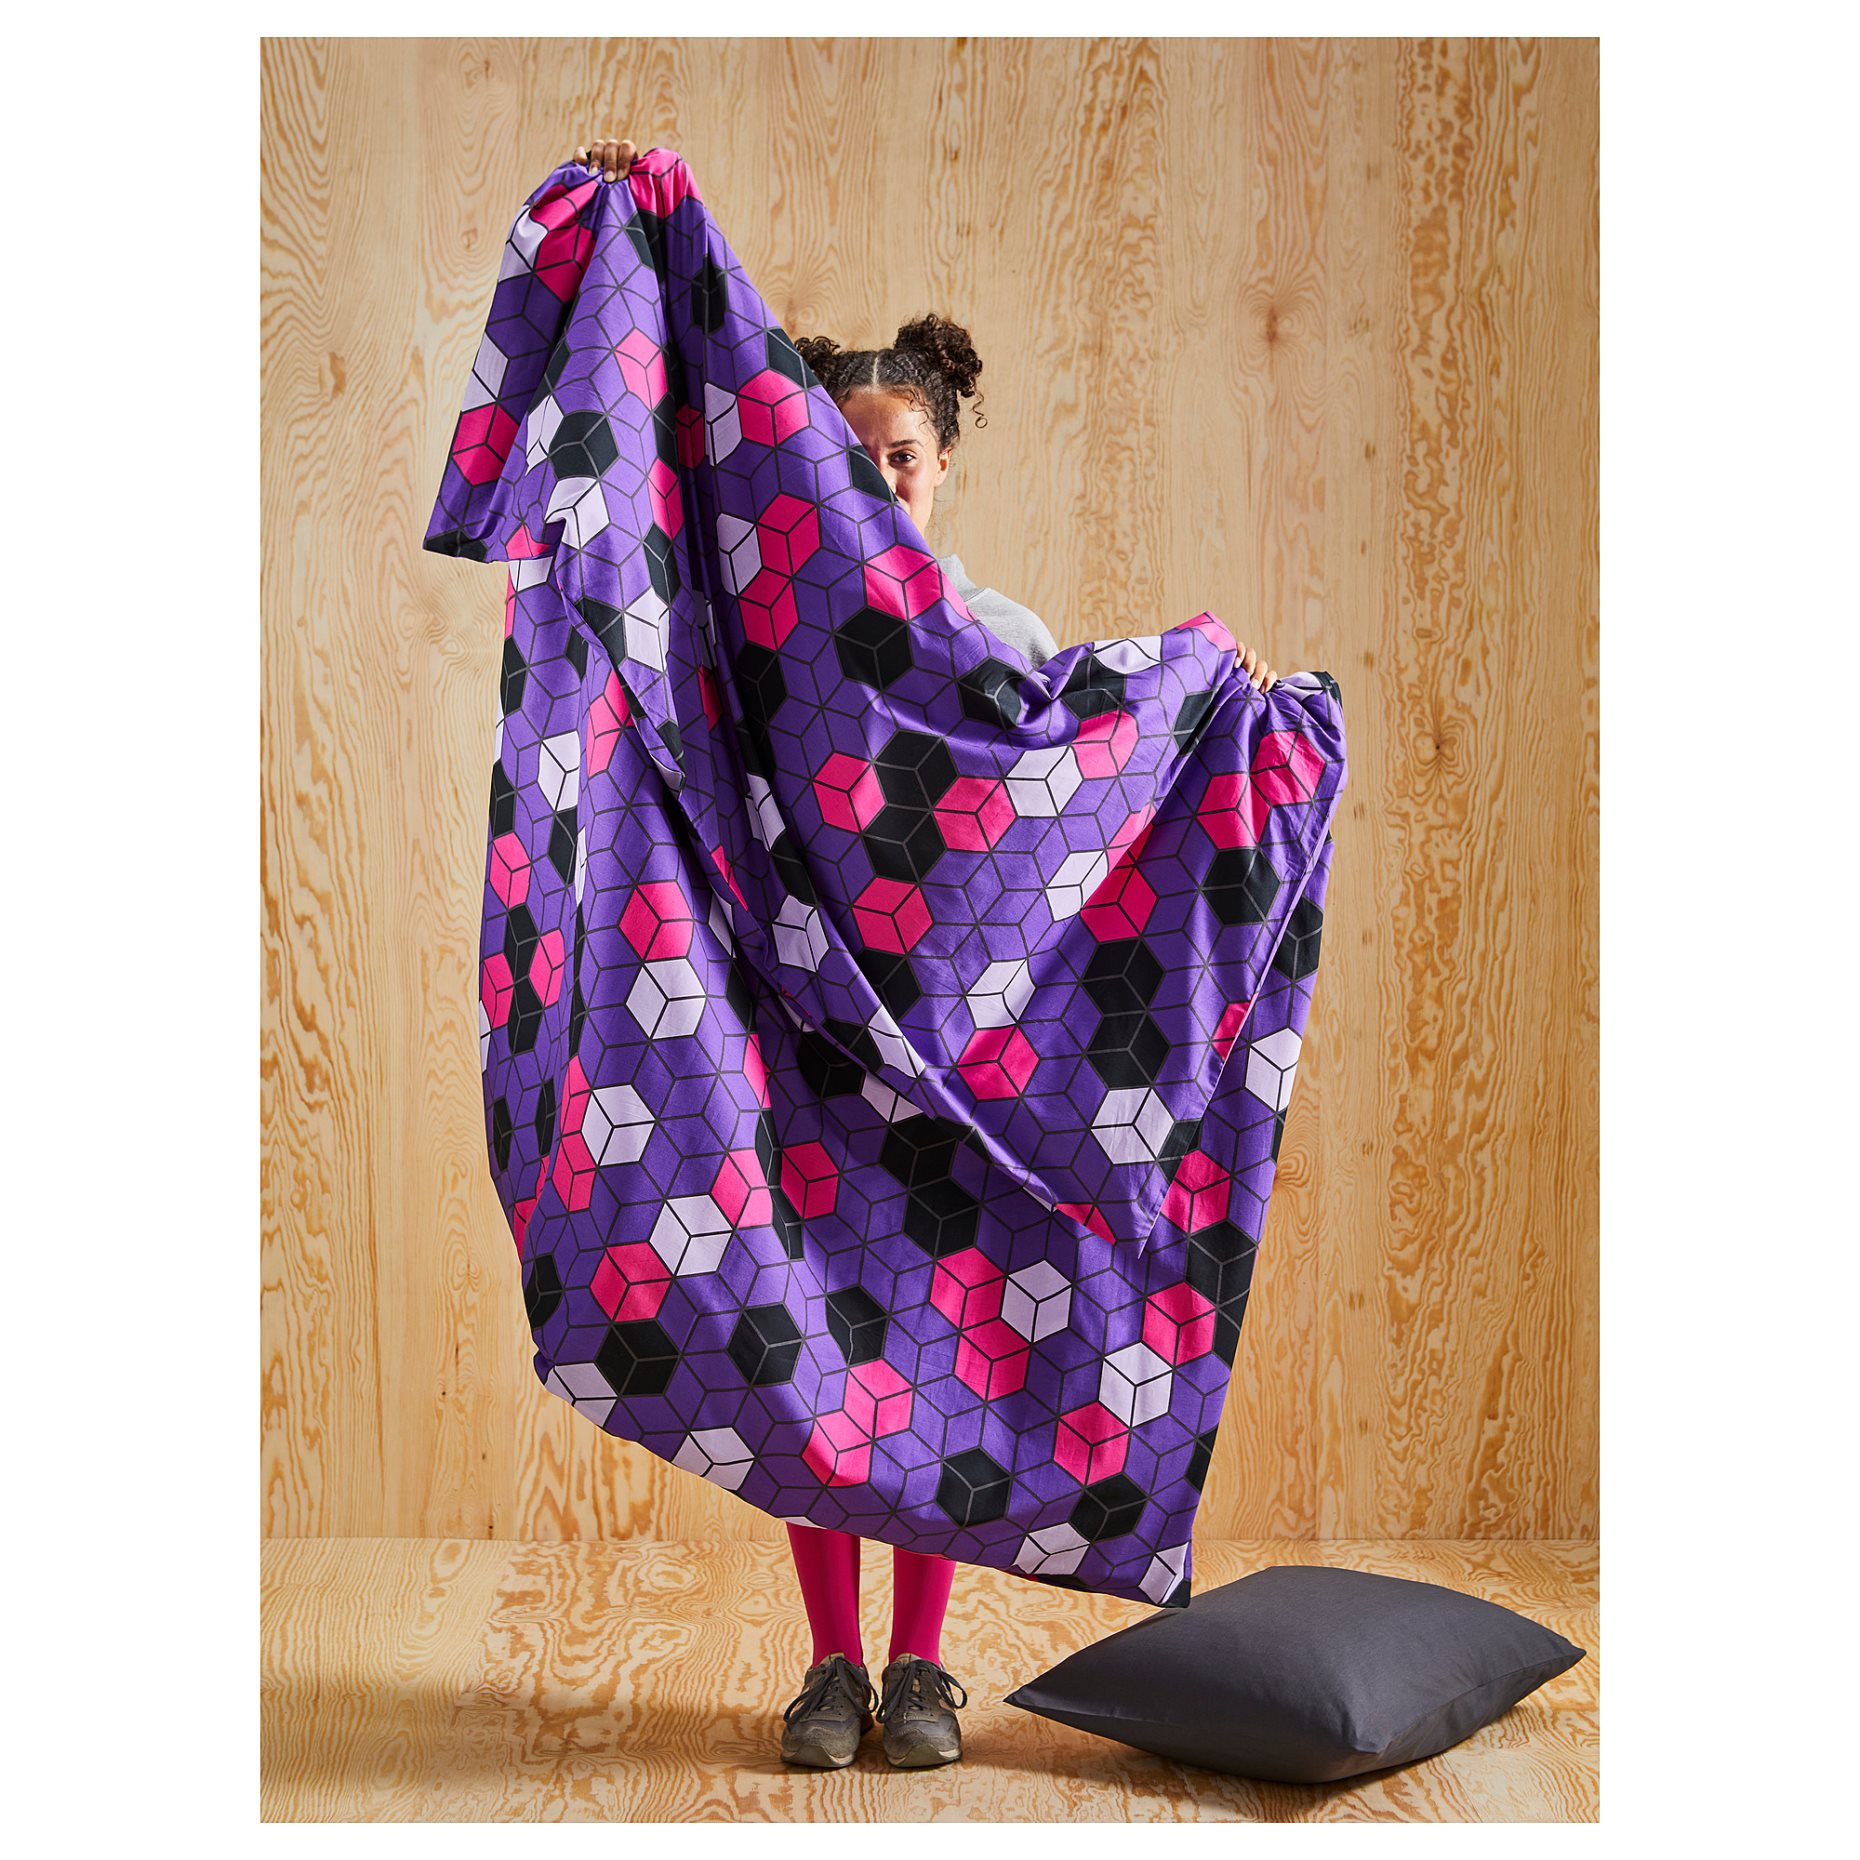 BLASKATA, duvet cover and pillowcase, 150x200/50x60 cm, 105.695.05